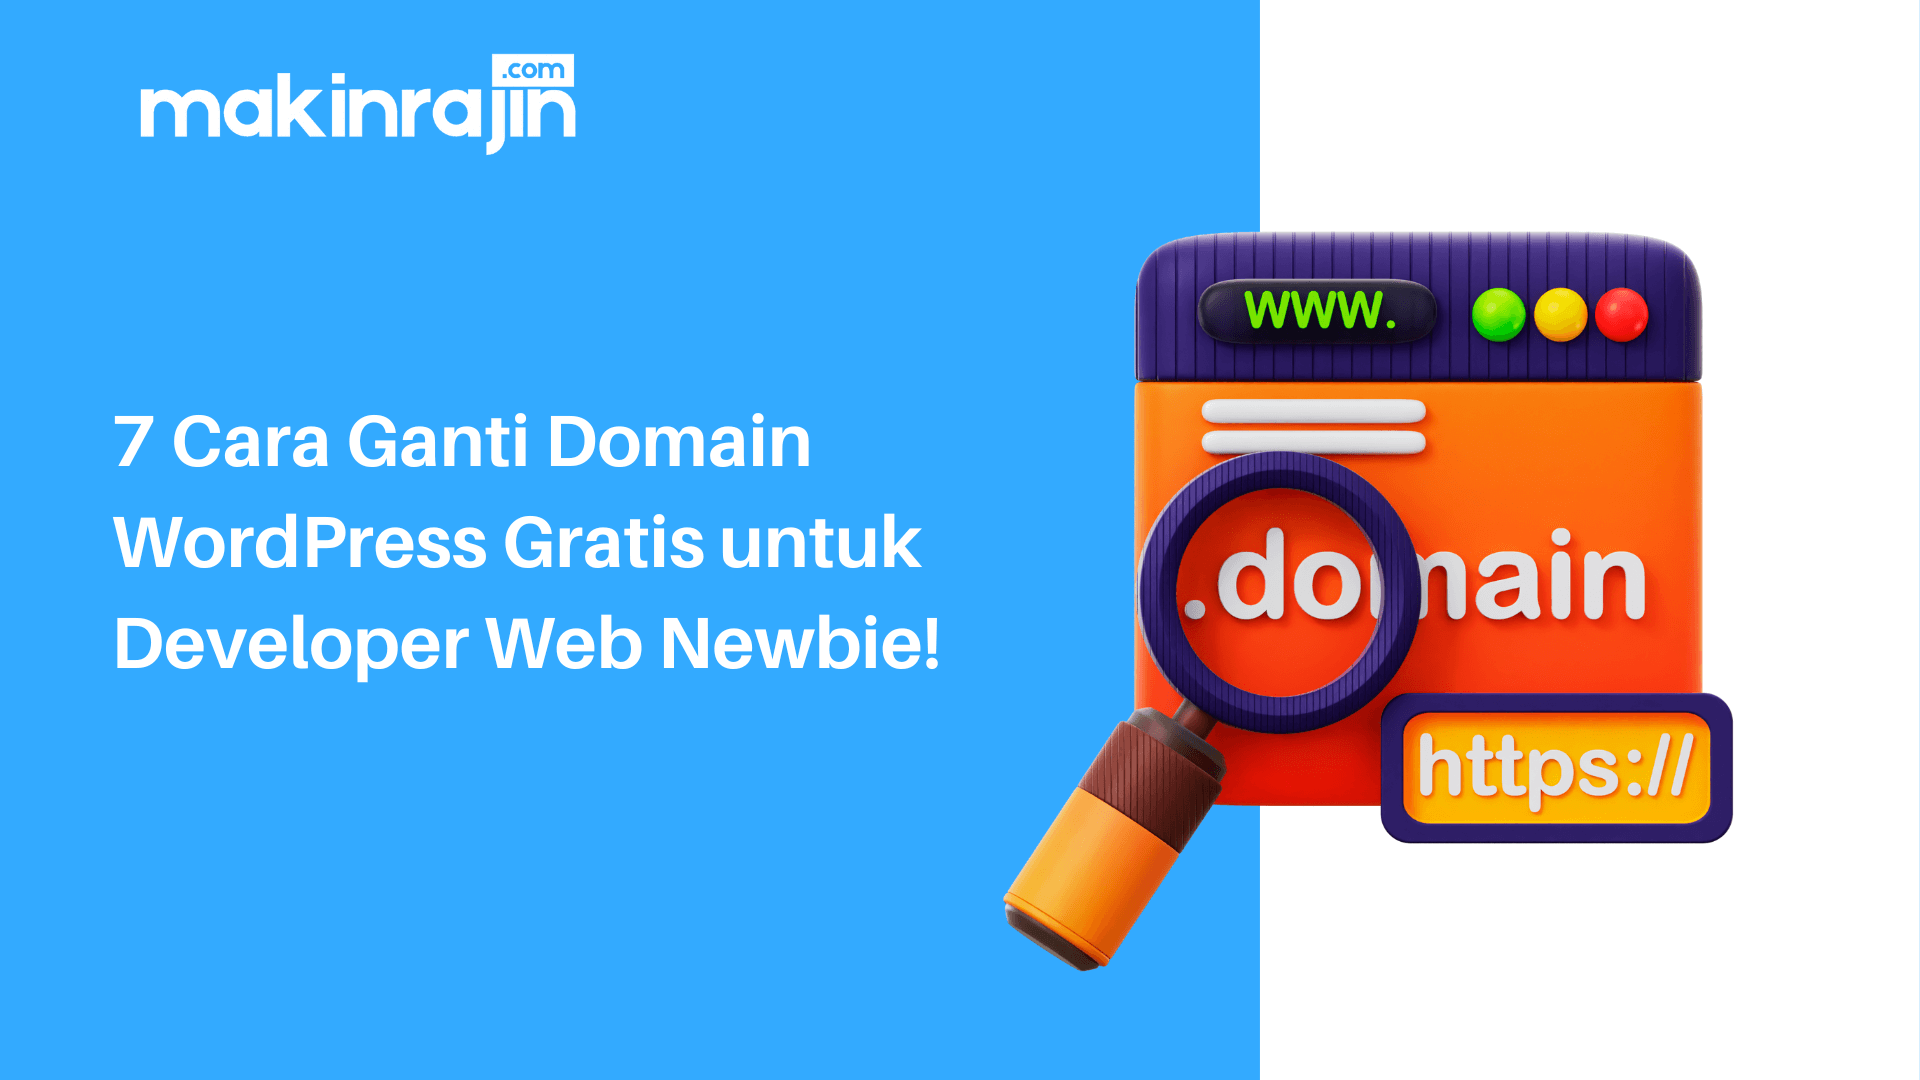 7 Cara Ganti Domain WordPress Gratis untuk Developer Web Newbie!